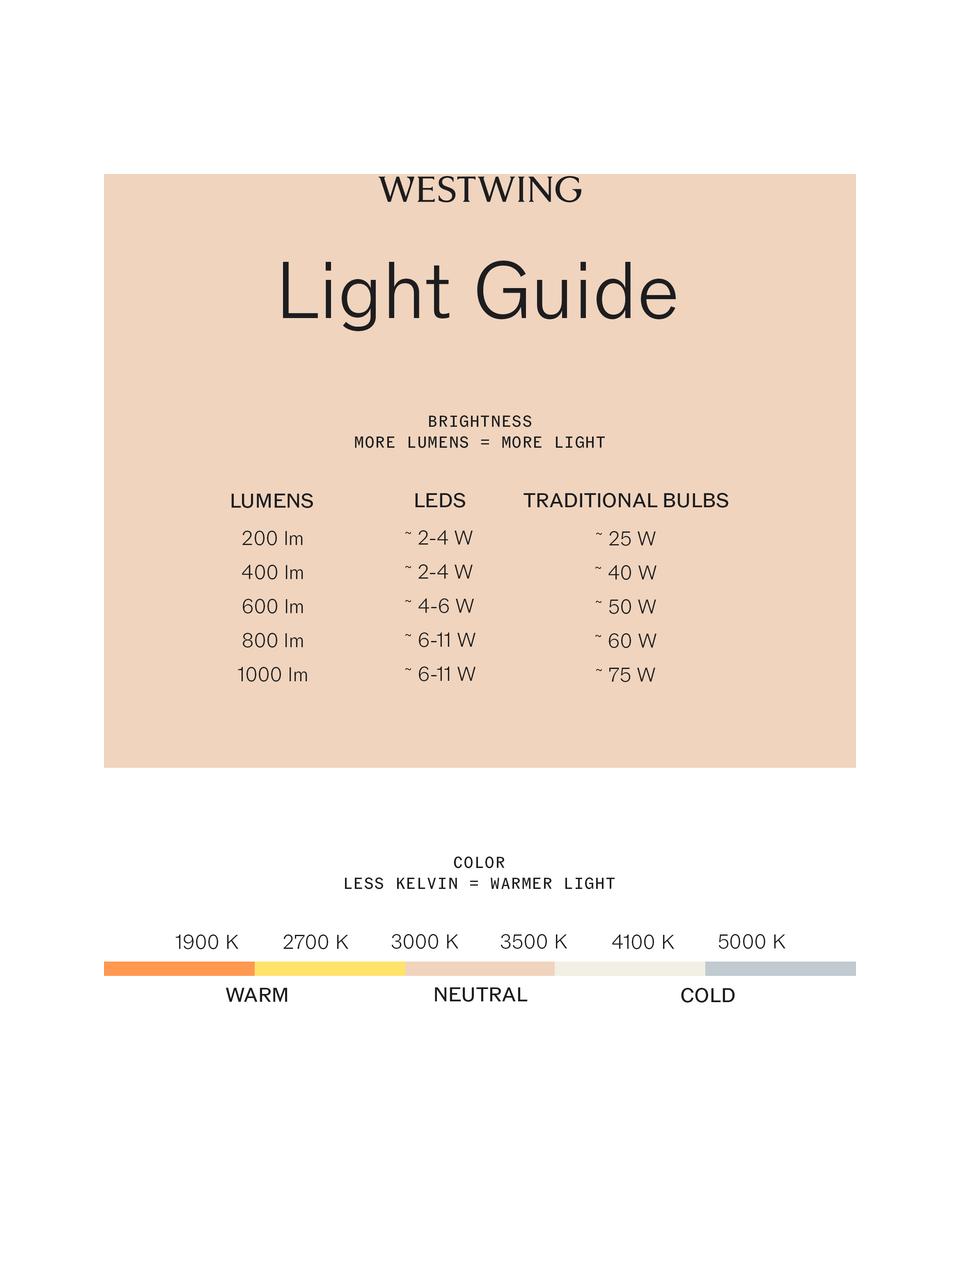 Nástěnné LED svítidlo Vitrum, Transparentní, zlatá, černá, Š 20 cm, H 25 cm